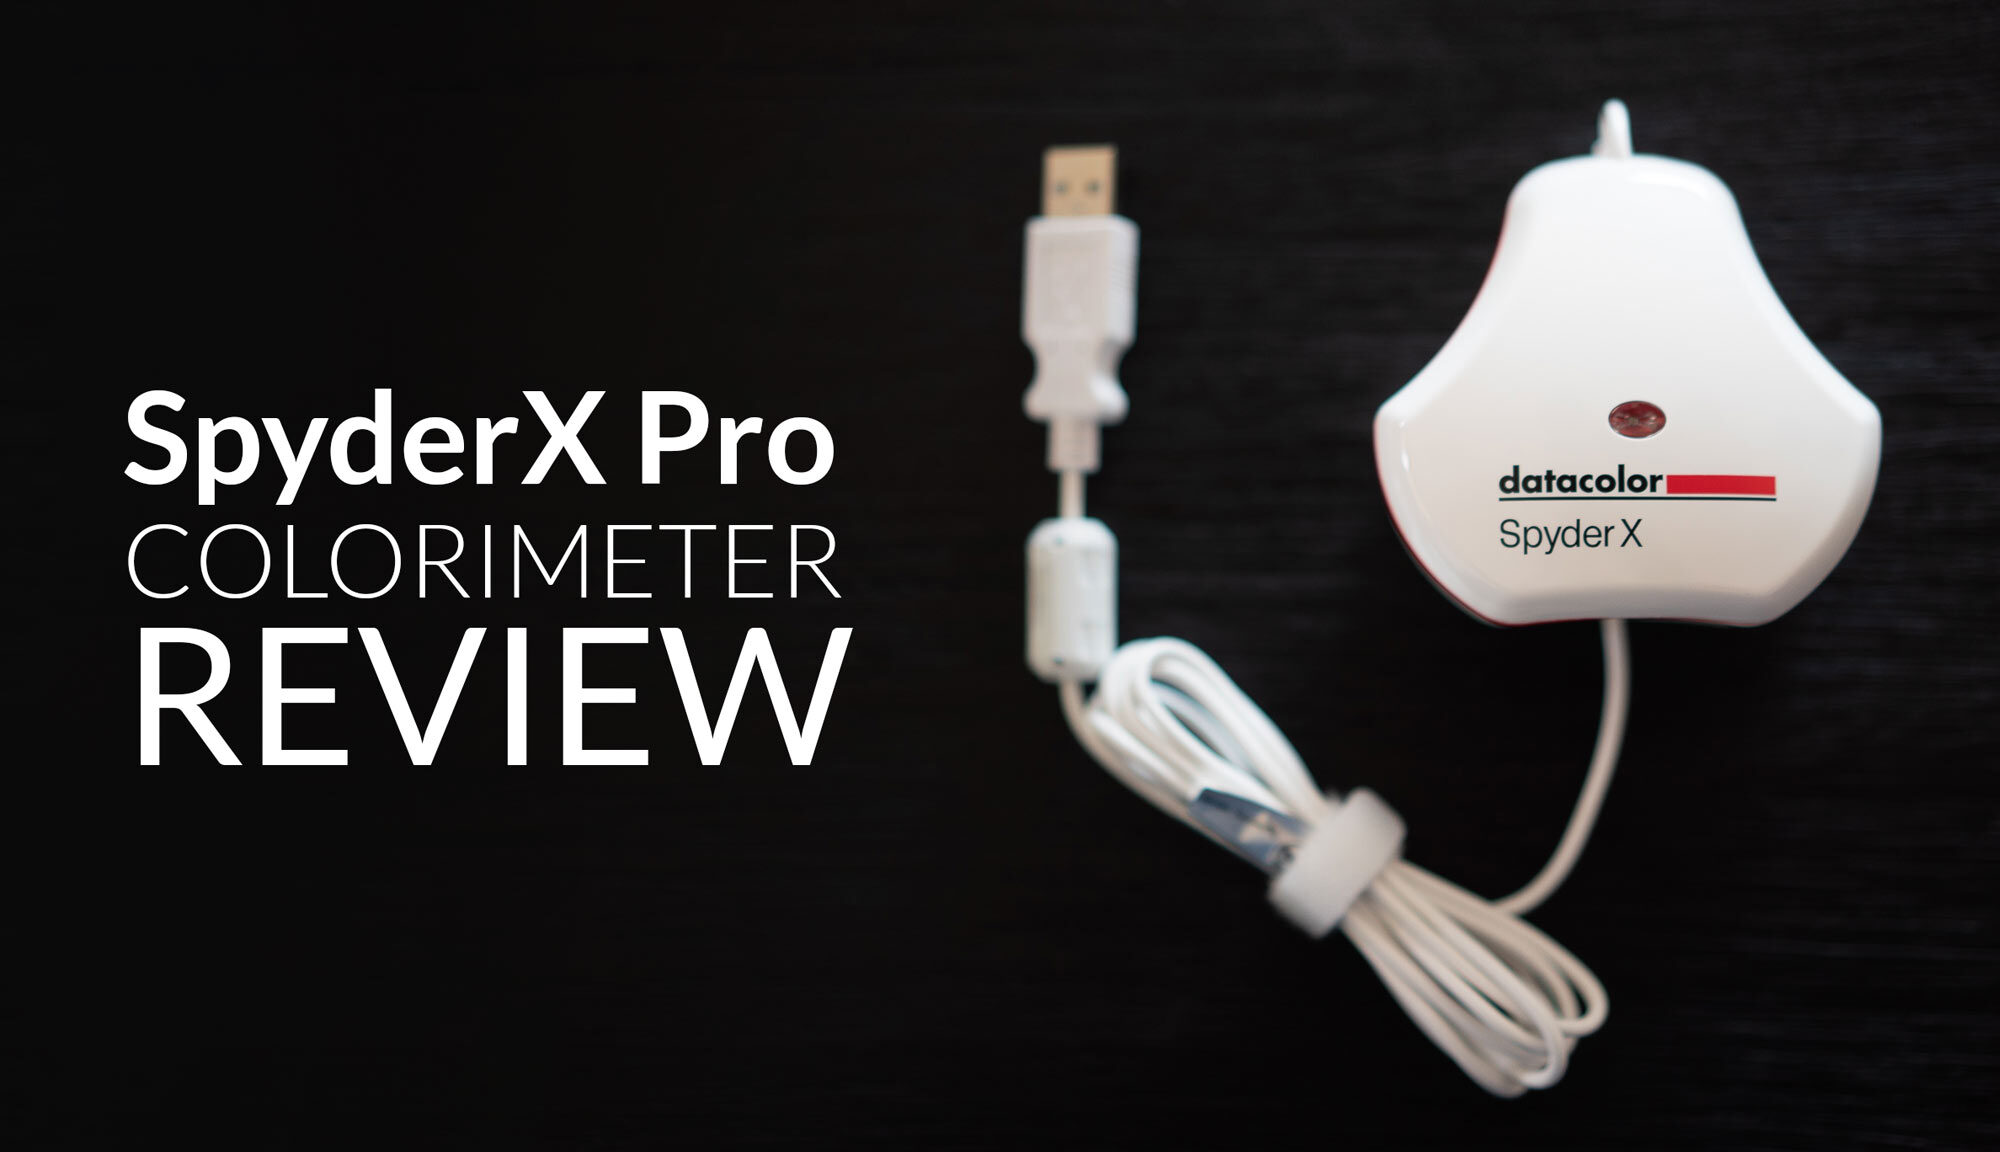 SpyderX Pro Colorimeter Review